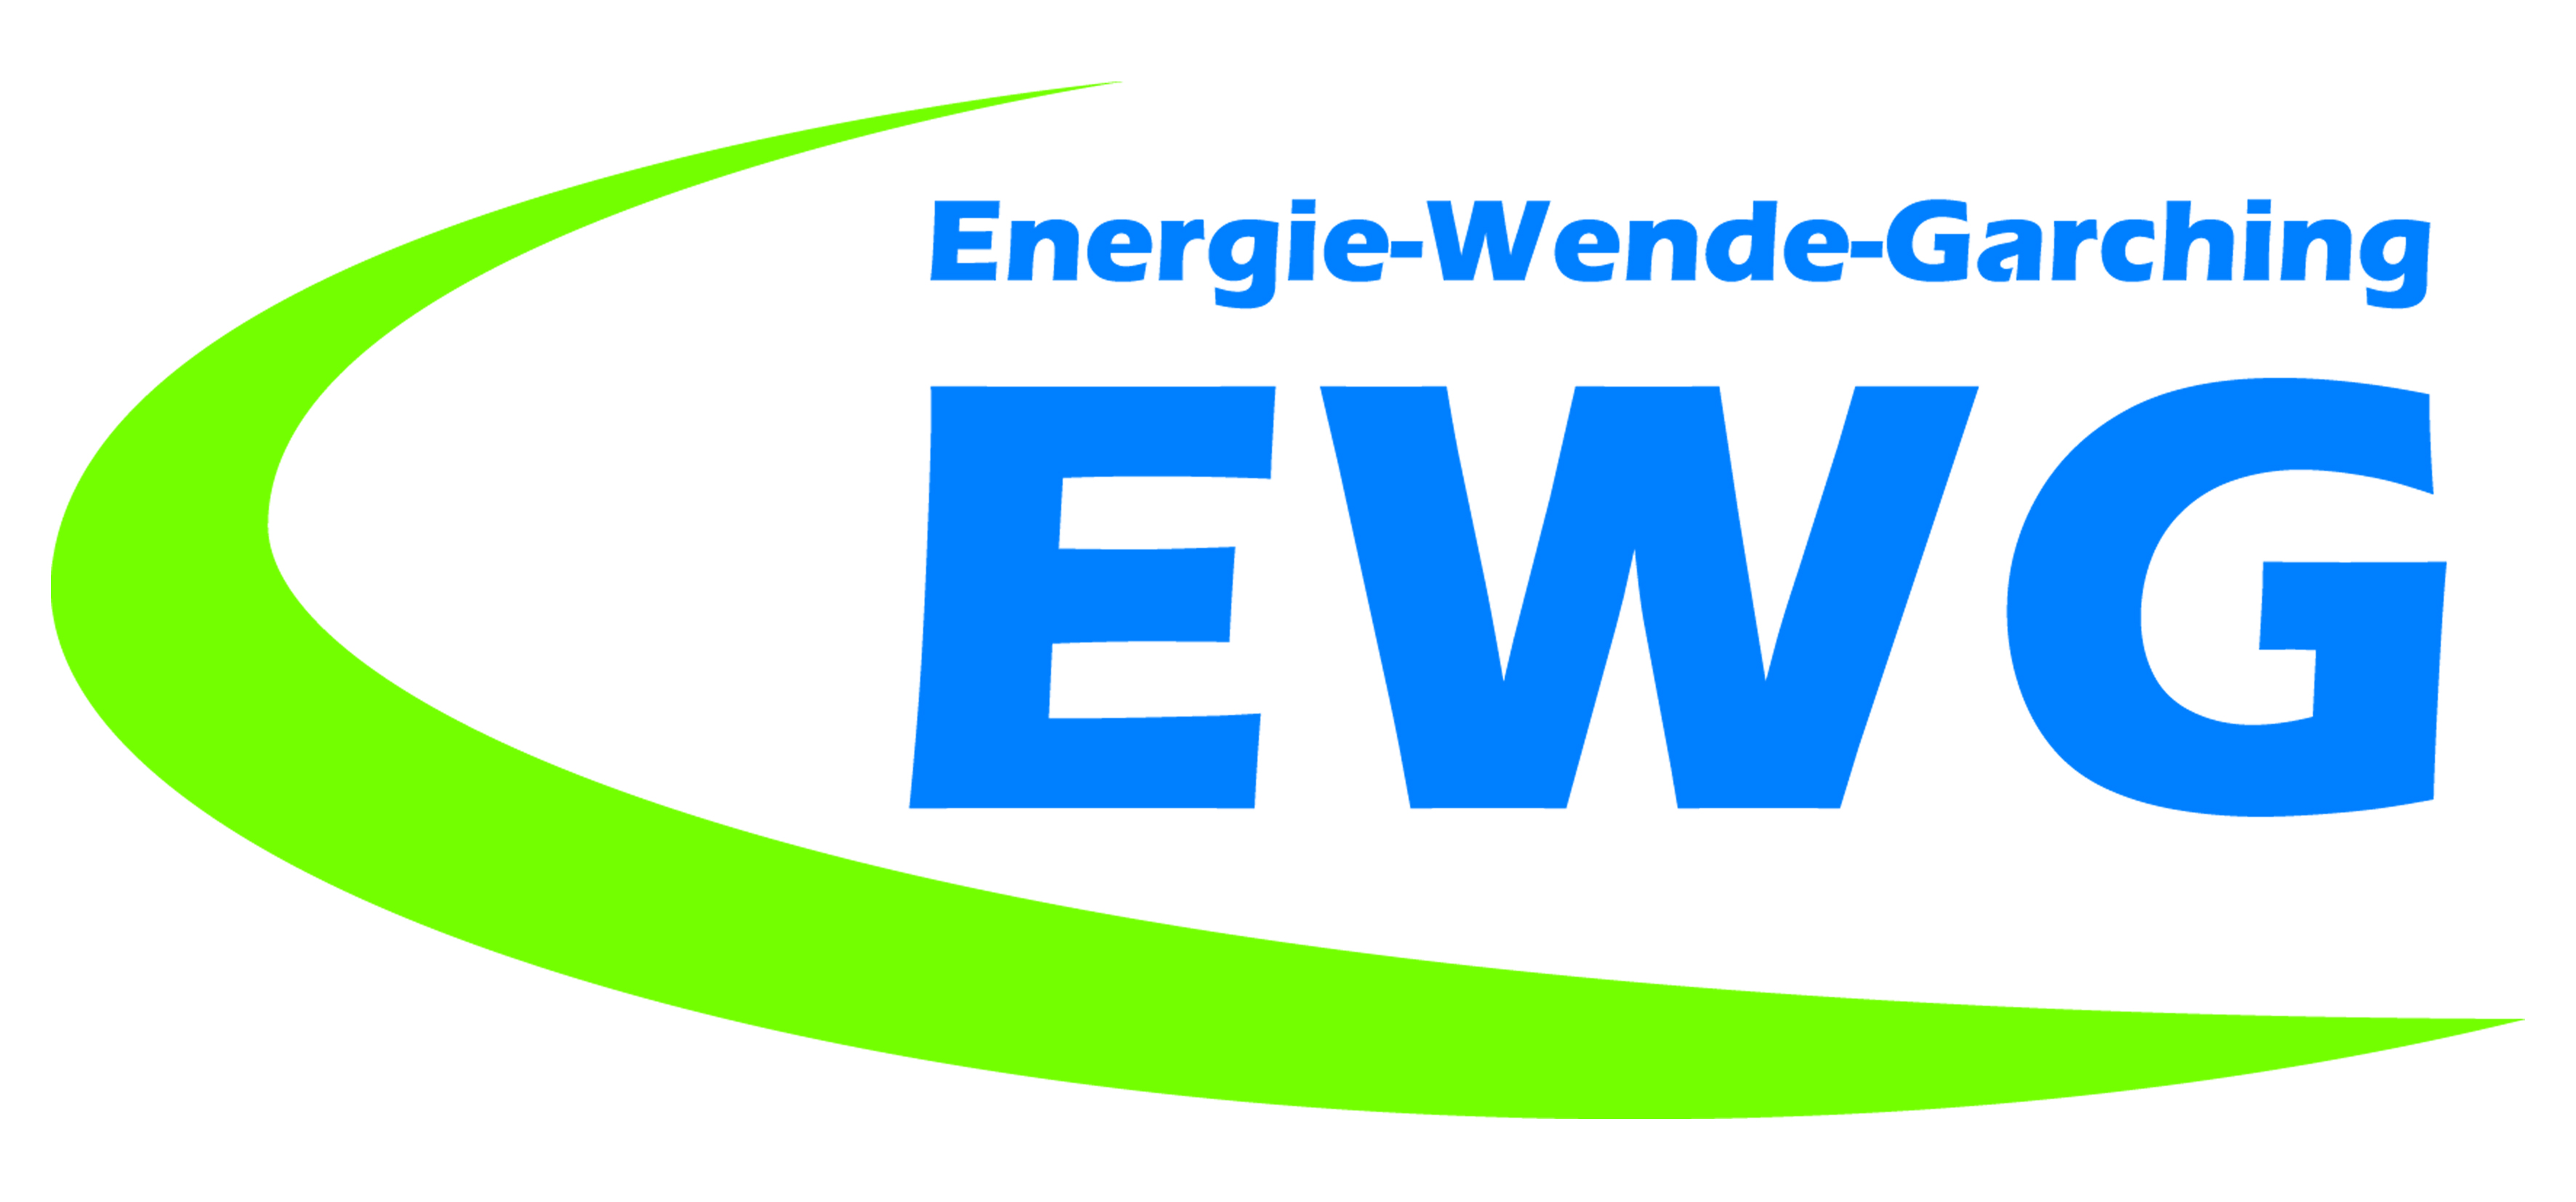 Energie-Wende-Garching GmbH & Co KG Logo